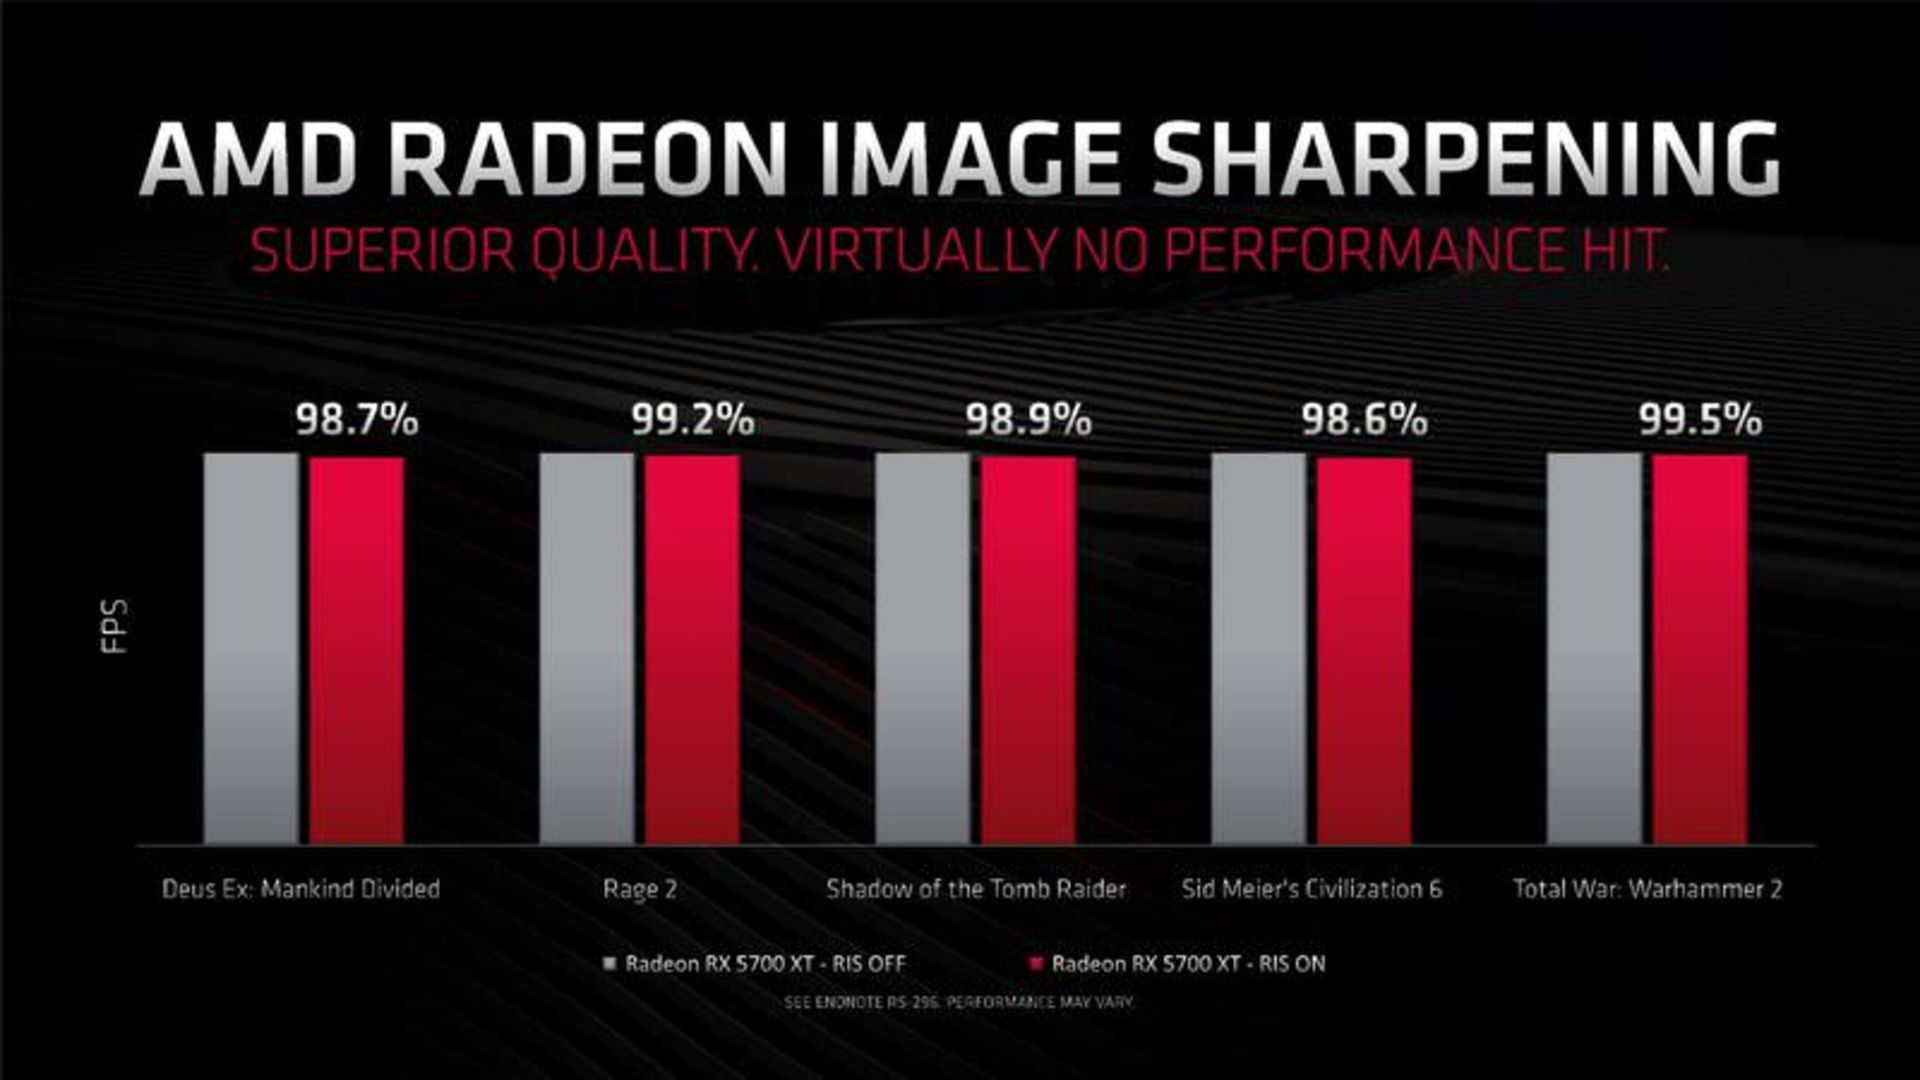 مرجع متخصصين ايران AMD رادئون RX 5700 